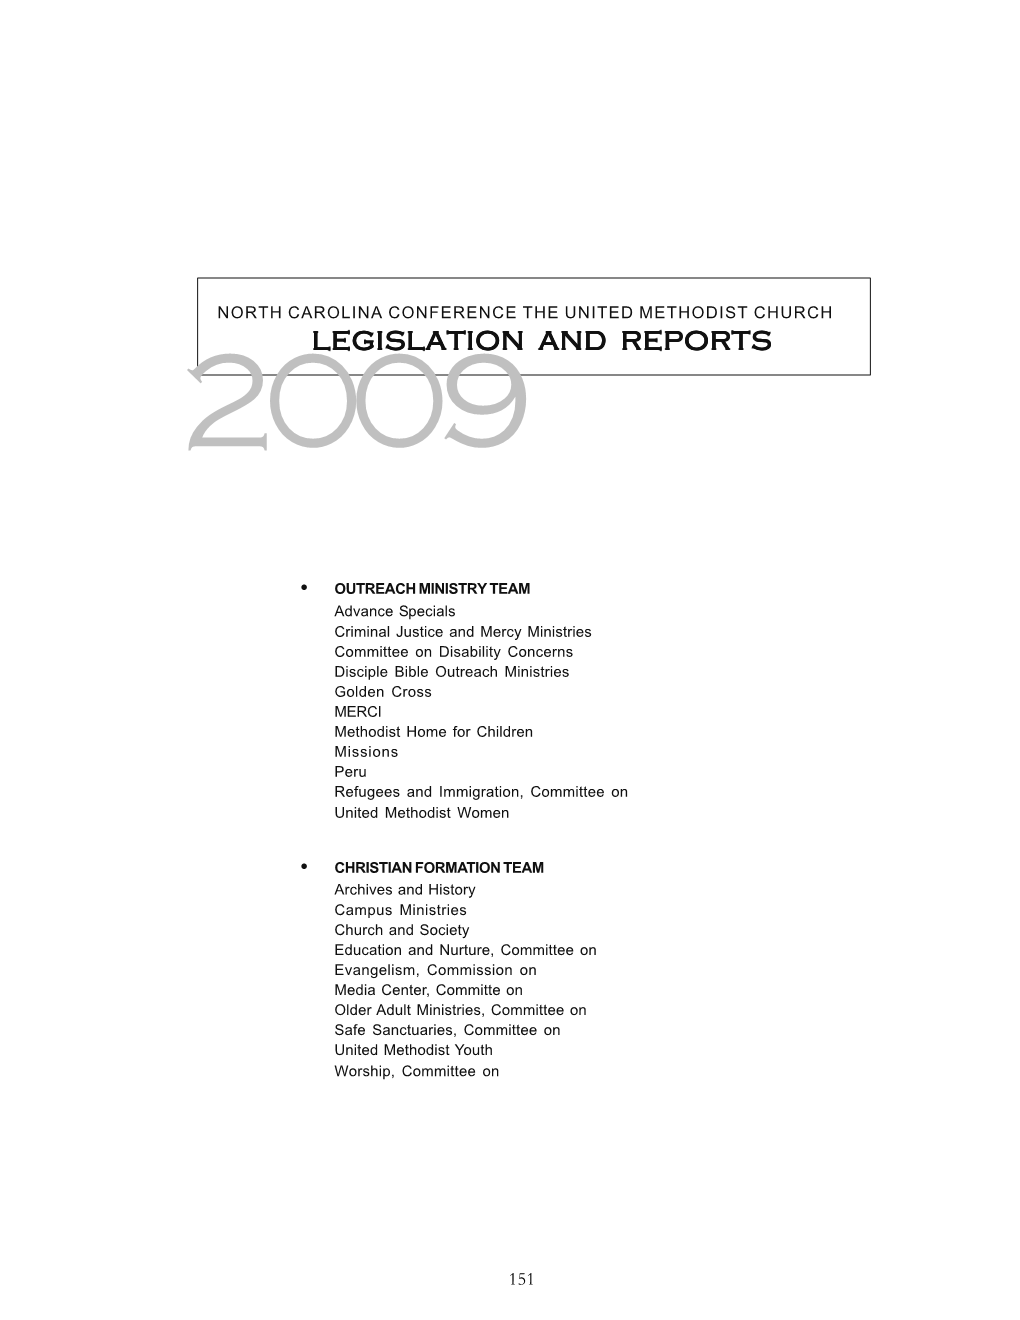 Legislation and Reports 2009Legislation and Reports